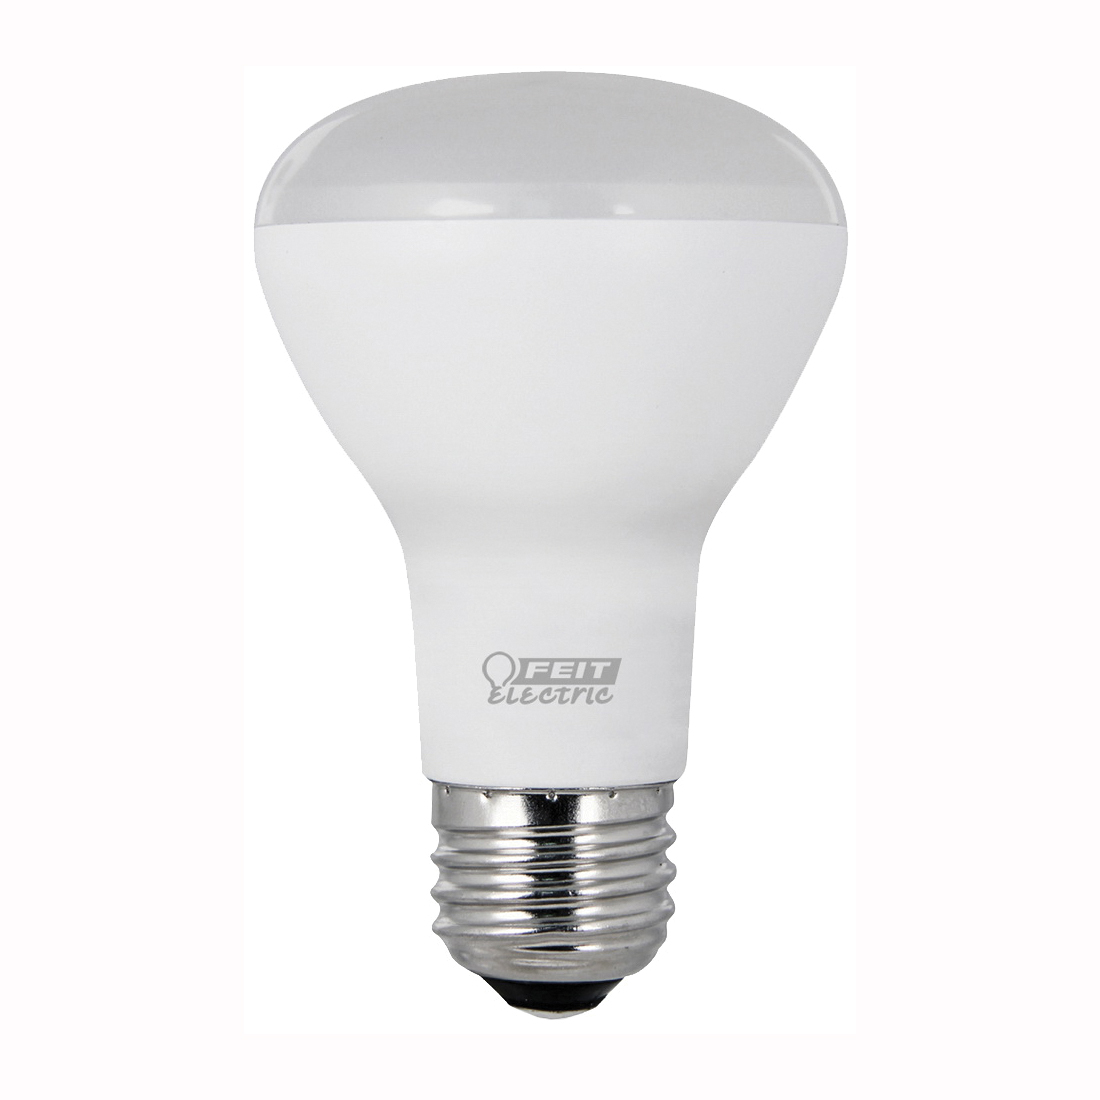 R20/10KLED/3/CAN LED Lamp, Flood/Spotlight, R20 Lamp, 45 W Equivalent, E26 Lamp Base, Soft White Light